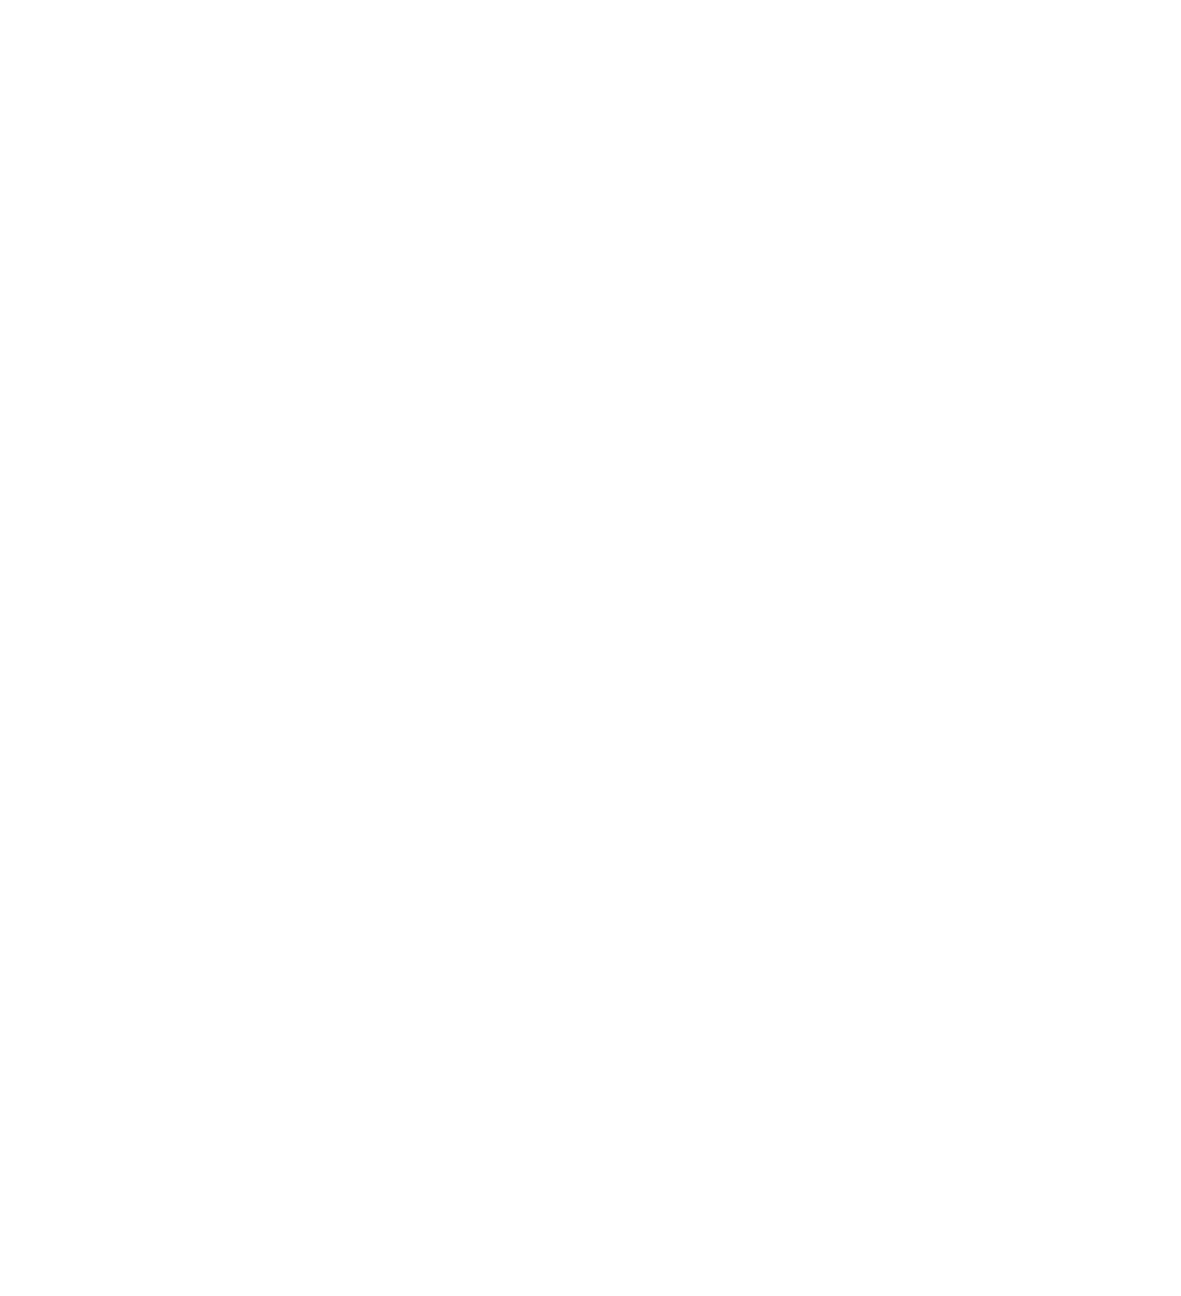 Editions Noldus